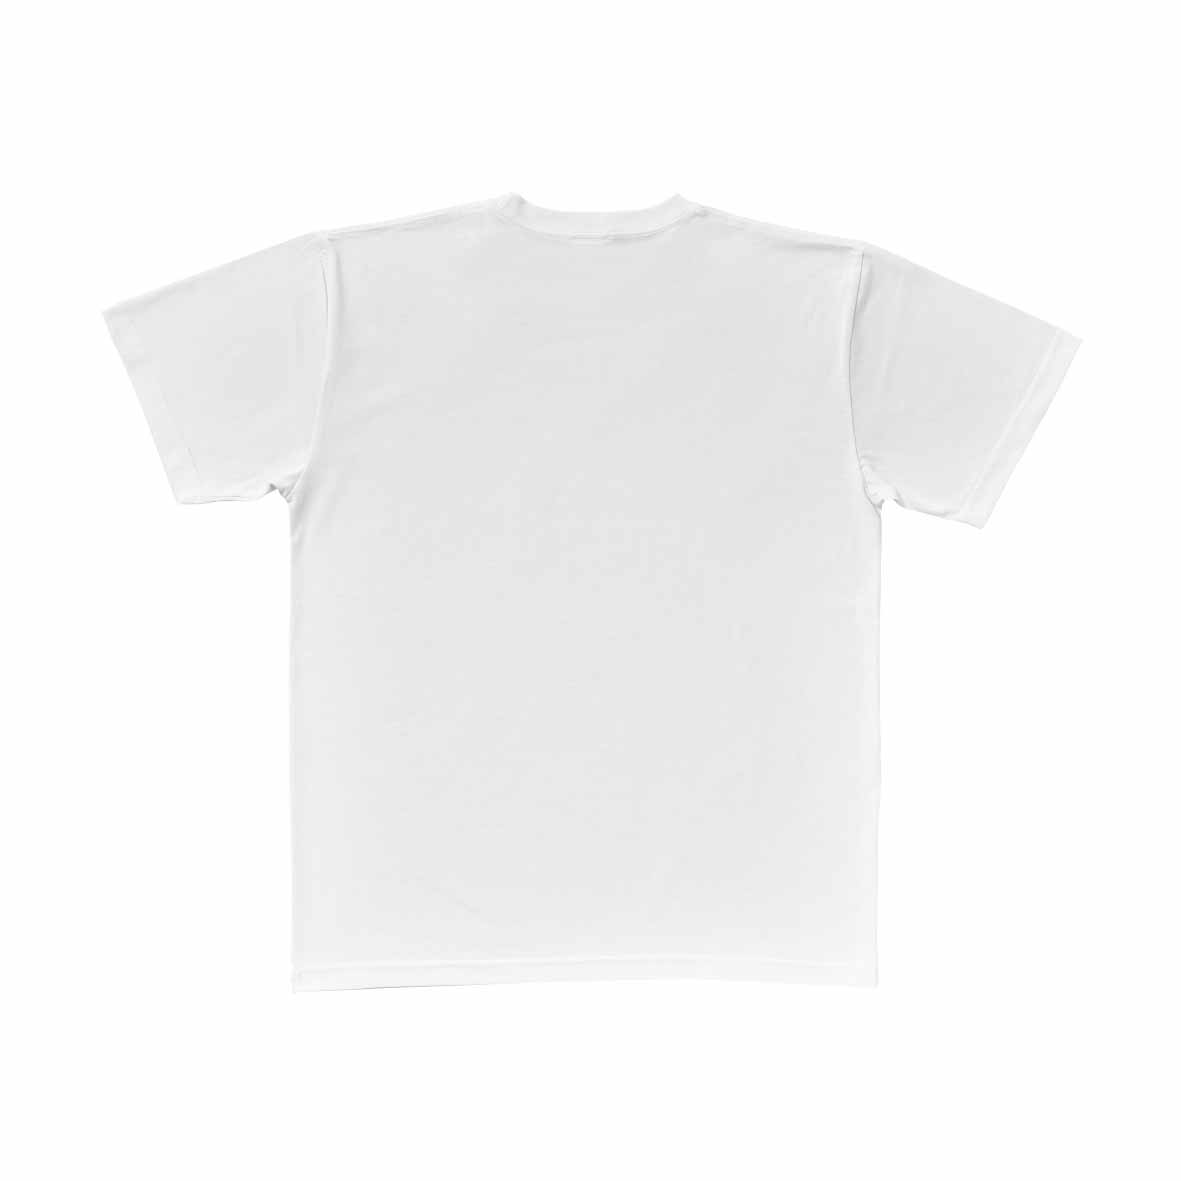 SLOTH スロス プレミアムファブリック Tシャツ <ペットボトルリサイクル> (品番ST1101)